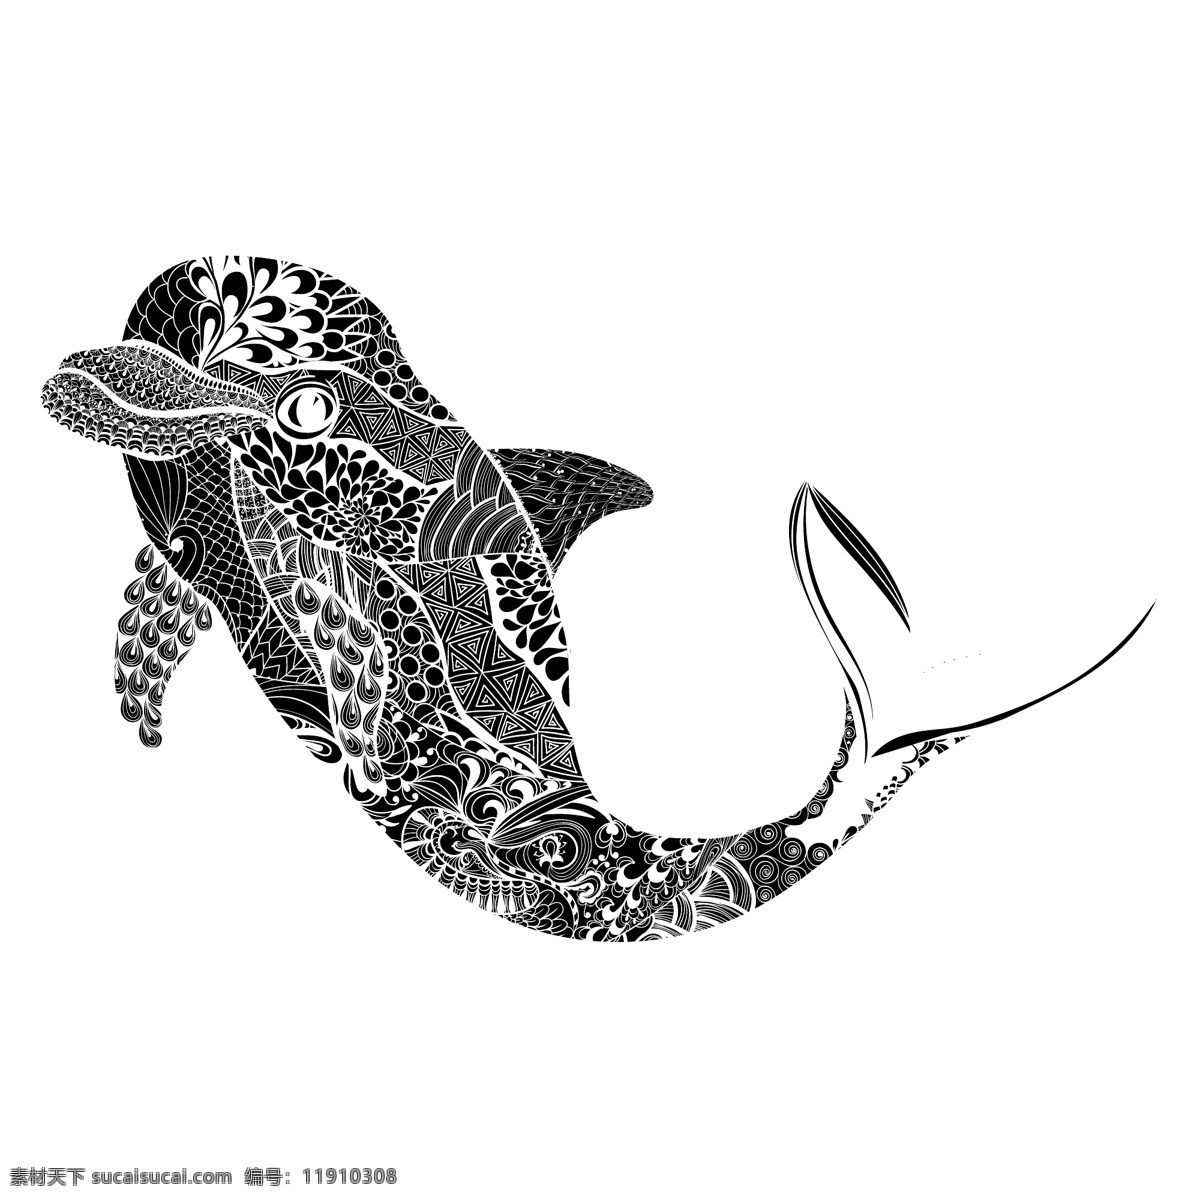 黑白 时尚 花纹 海豚 插画 卡通 艺术